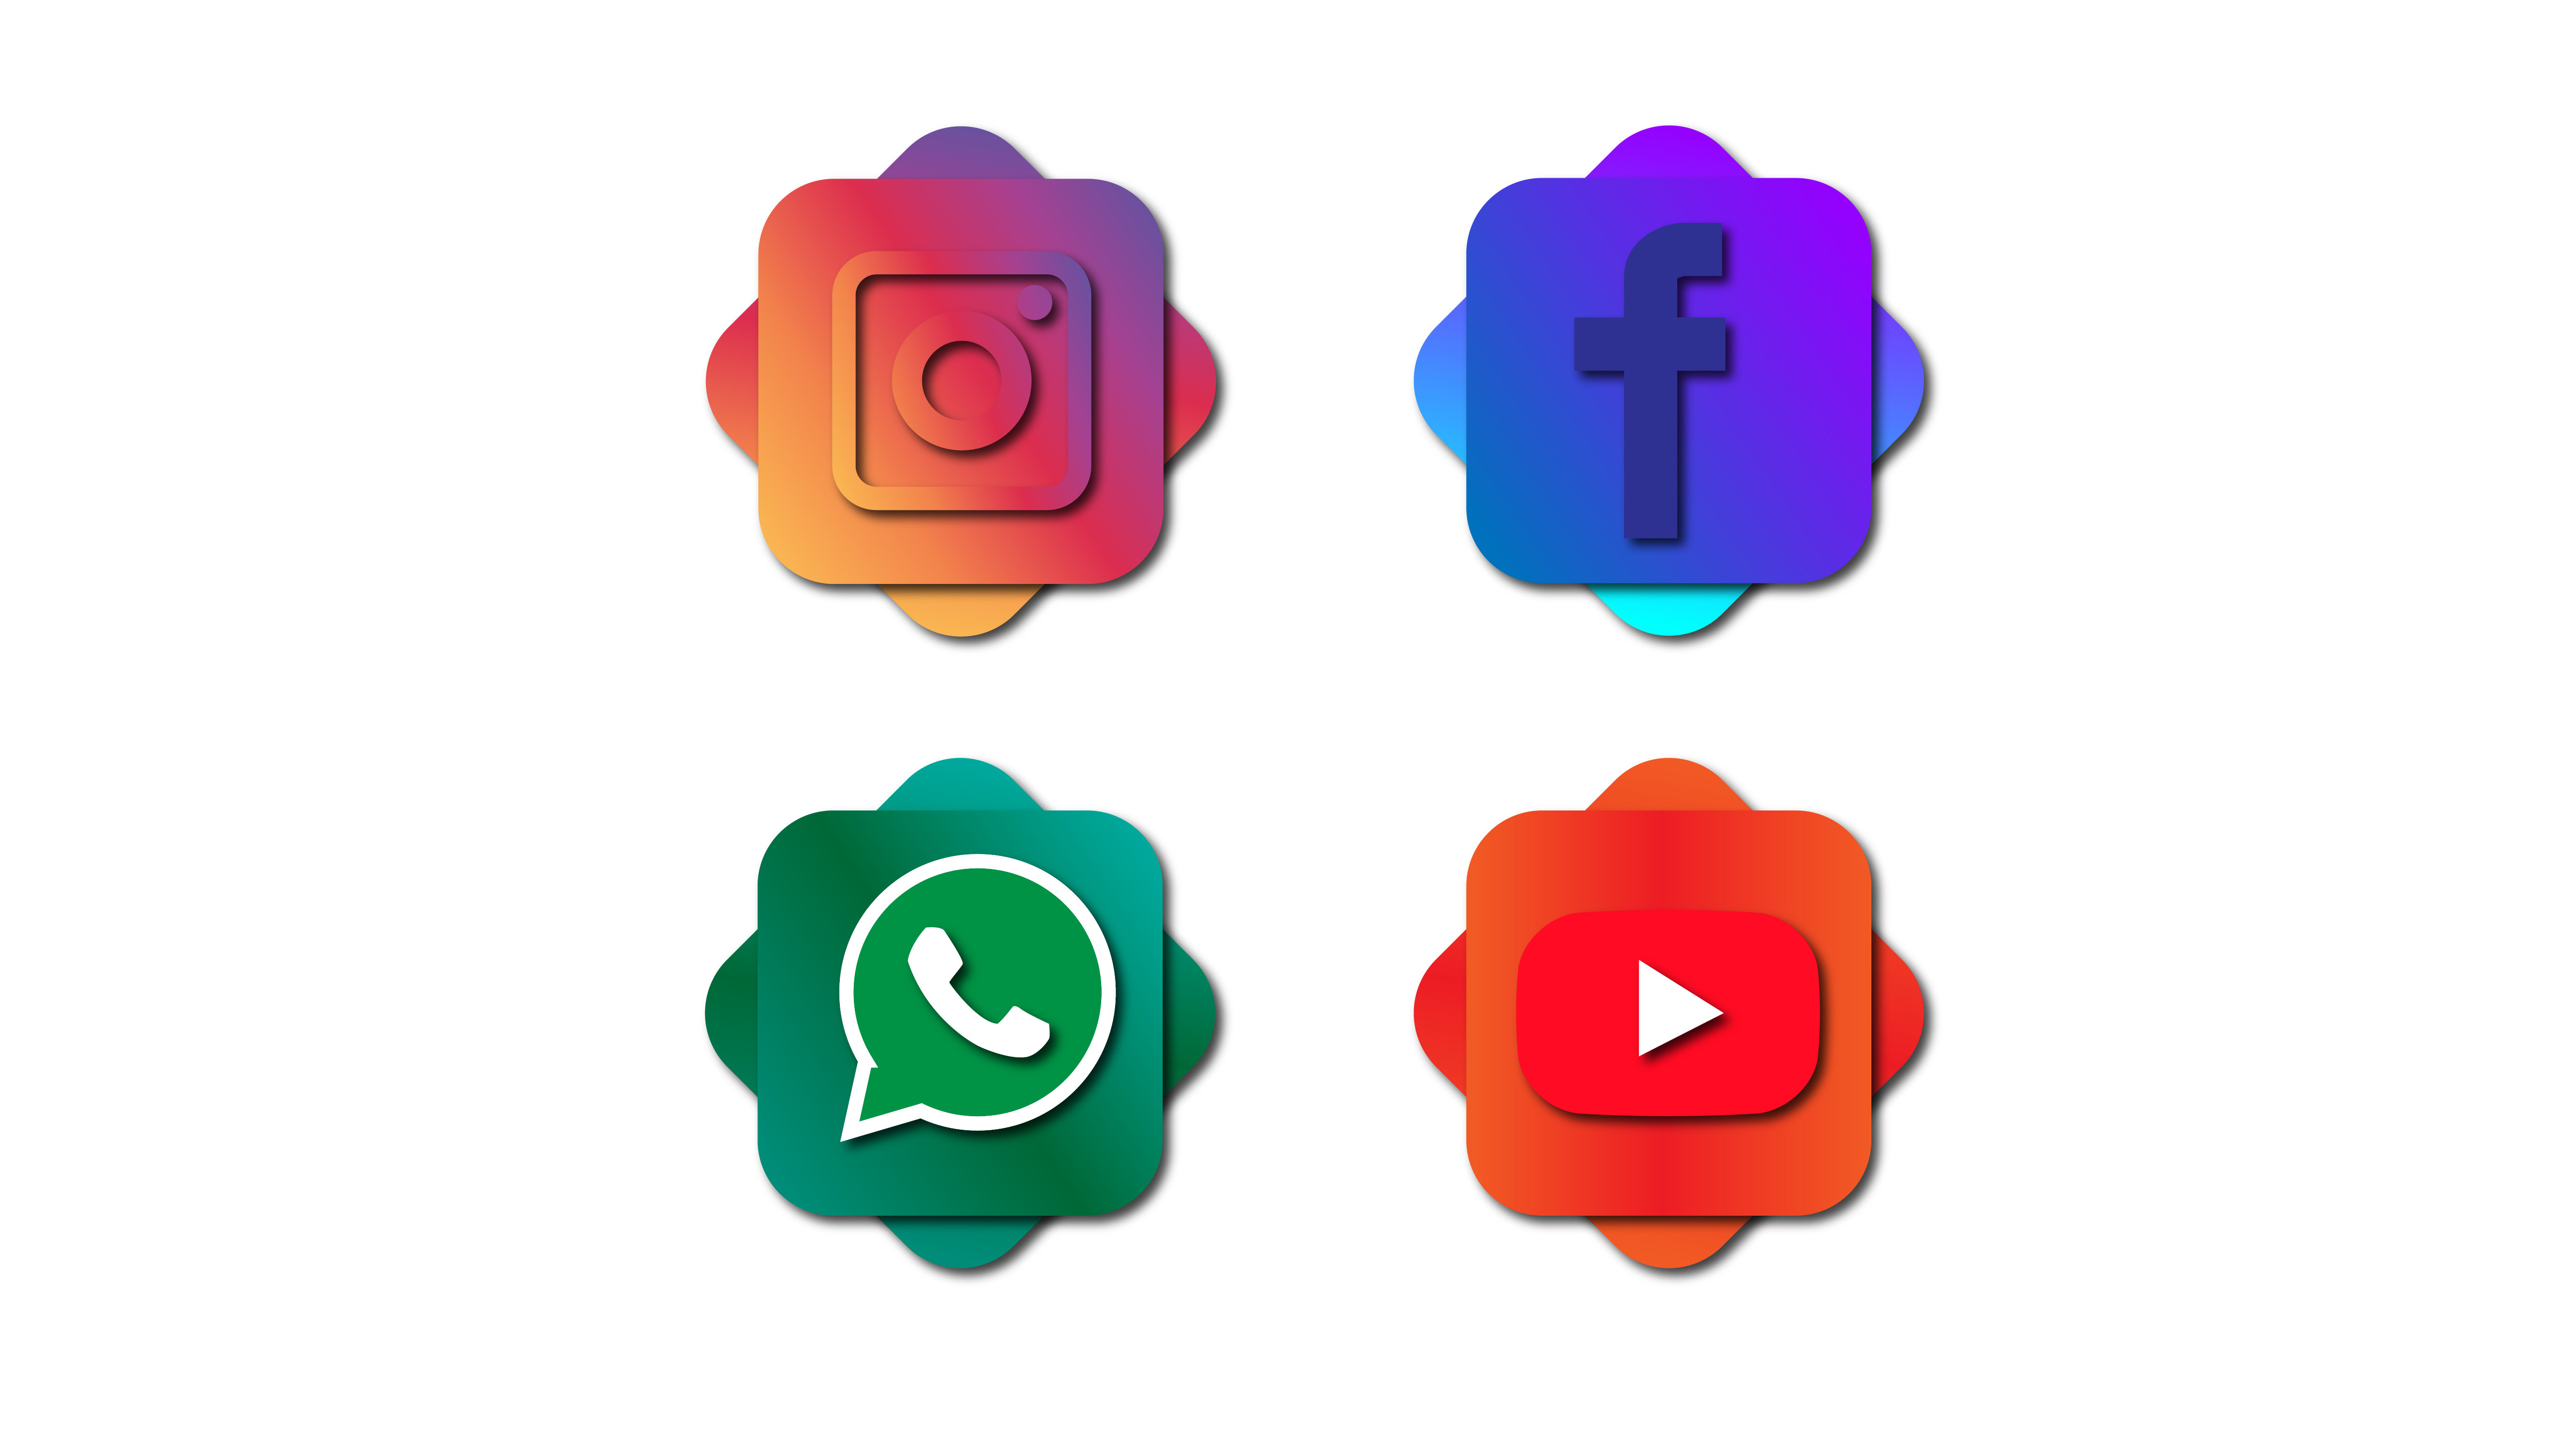 Whatsapp Phone Icon, Whatsapp, Social Media, Whatsapp Logo PNG and